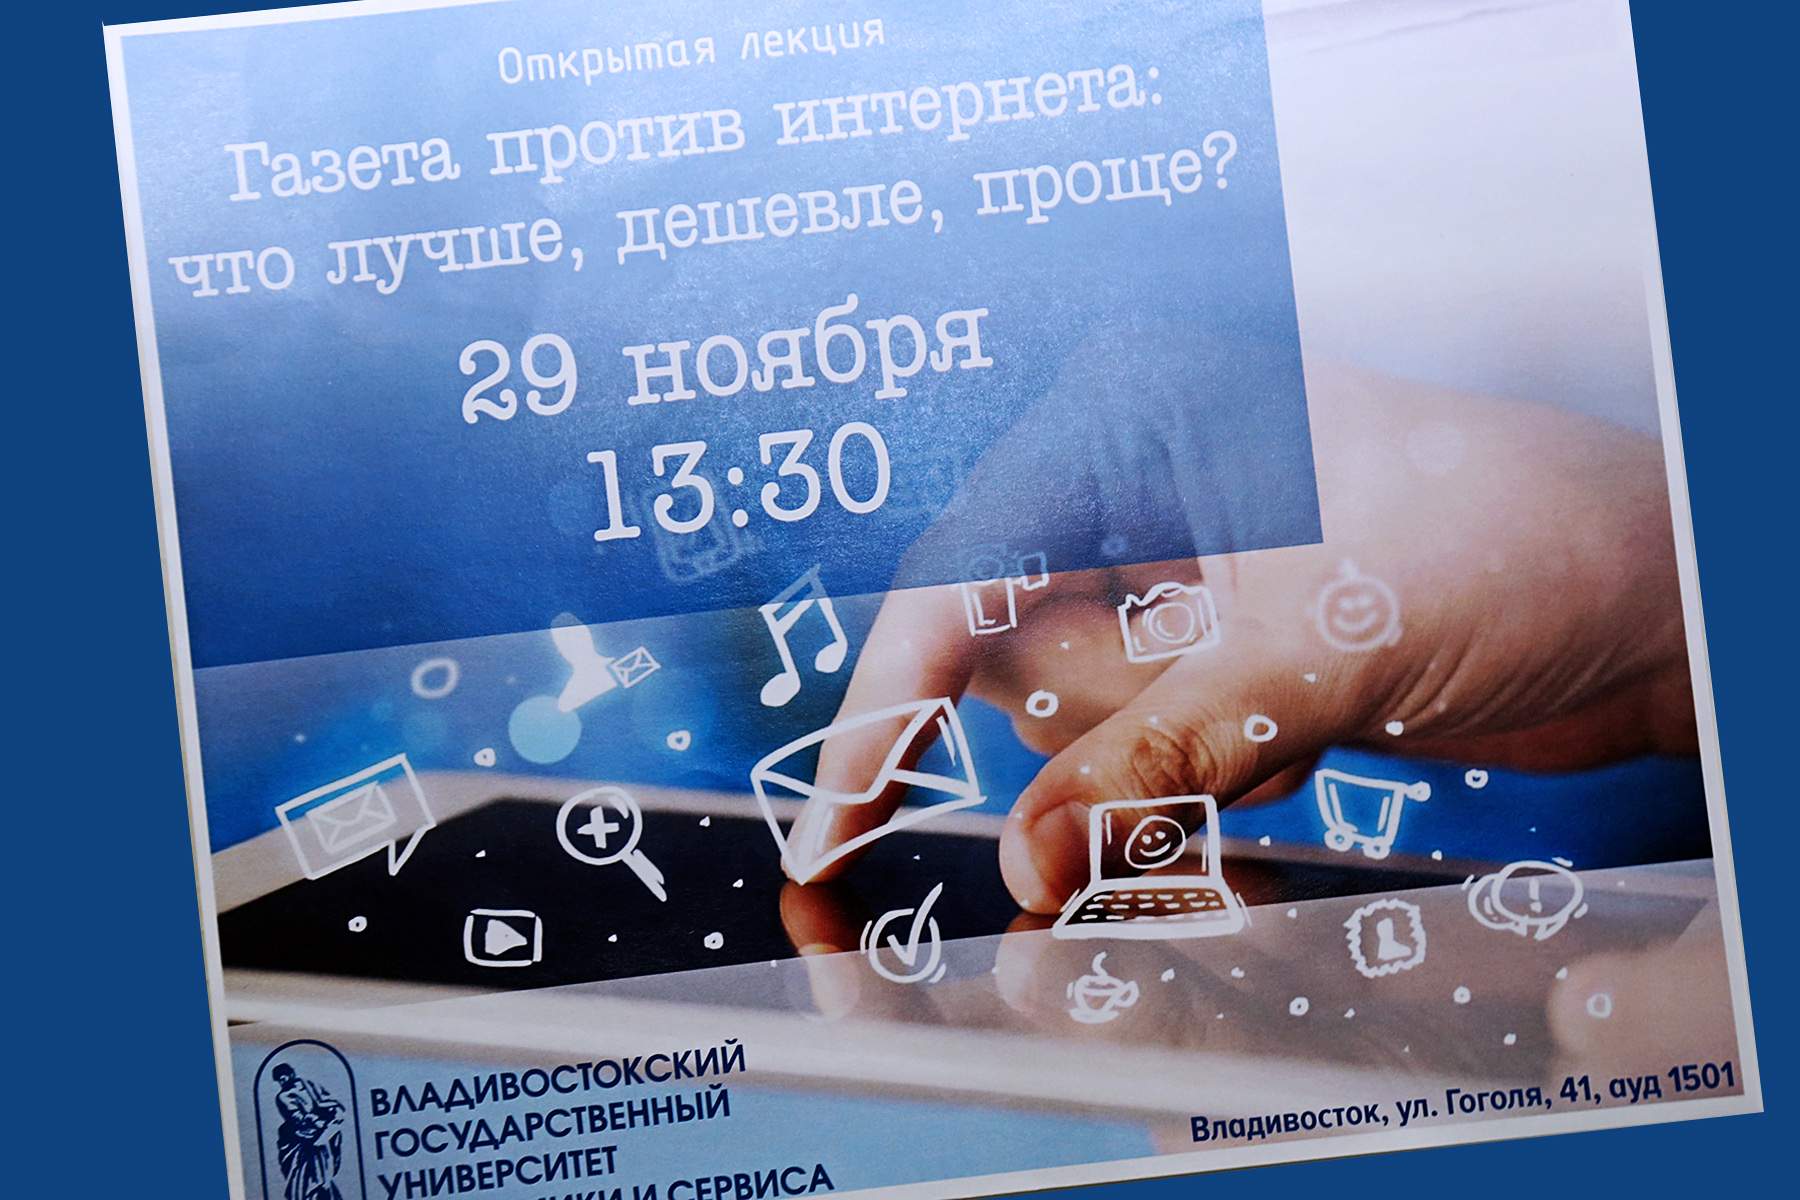 Газета vs Интернет: открытая лекция о противостоянии коммуникационных феноменов во ВГУЭС